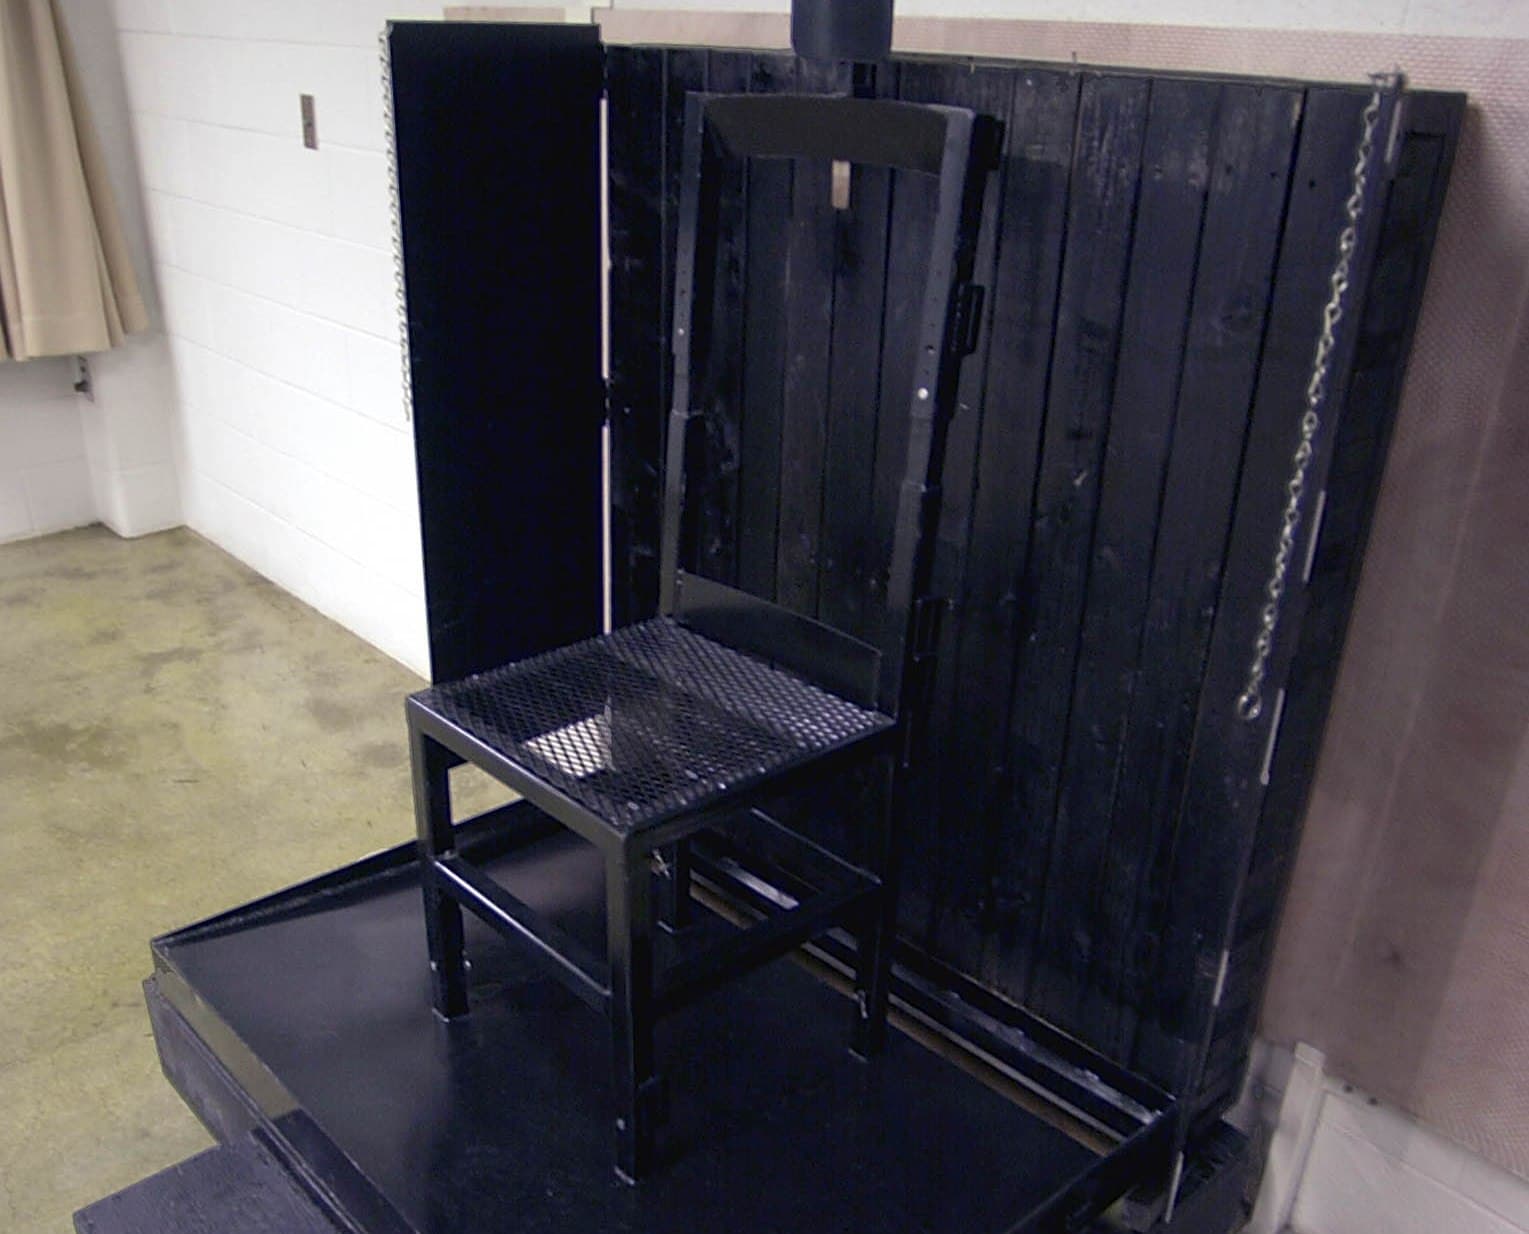 Júliustól végrehajtják a szövetségi szintű halálbüntetéseket az Egyesült Államokban